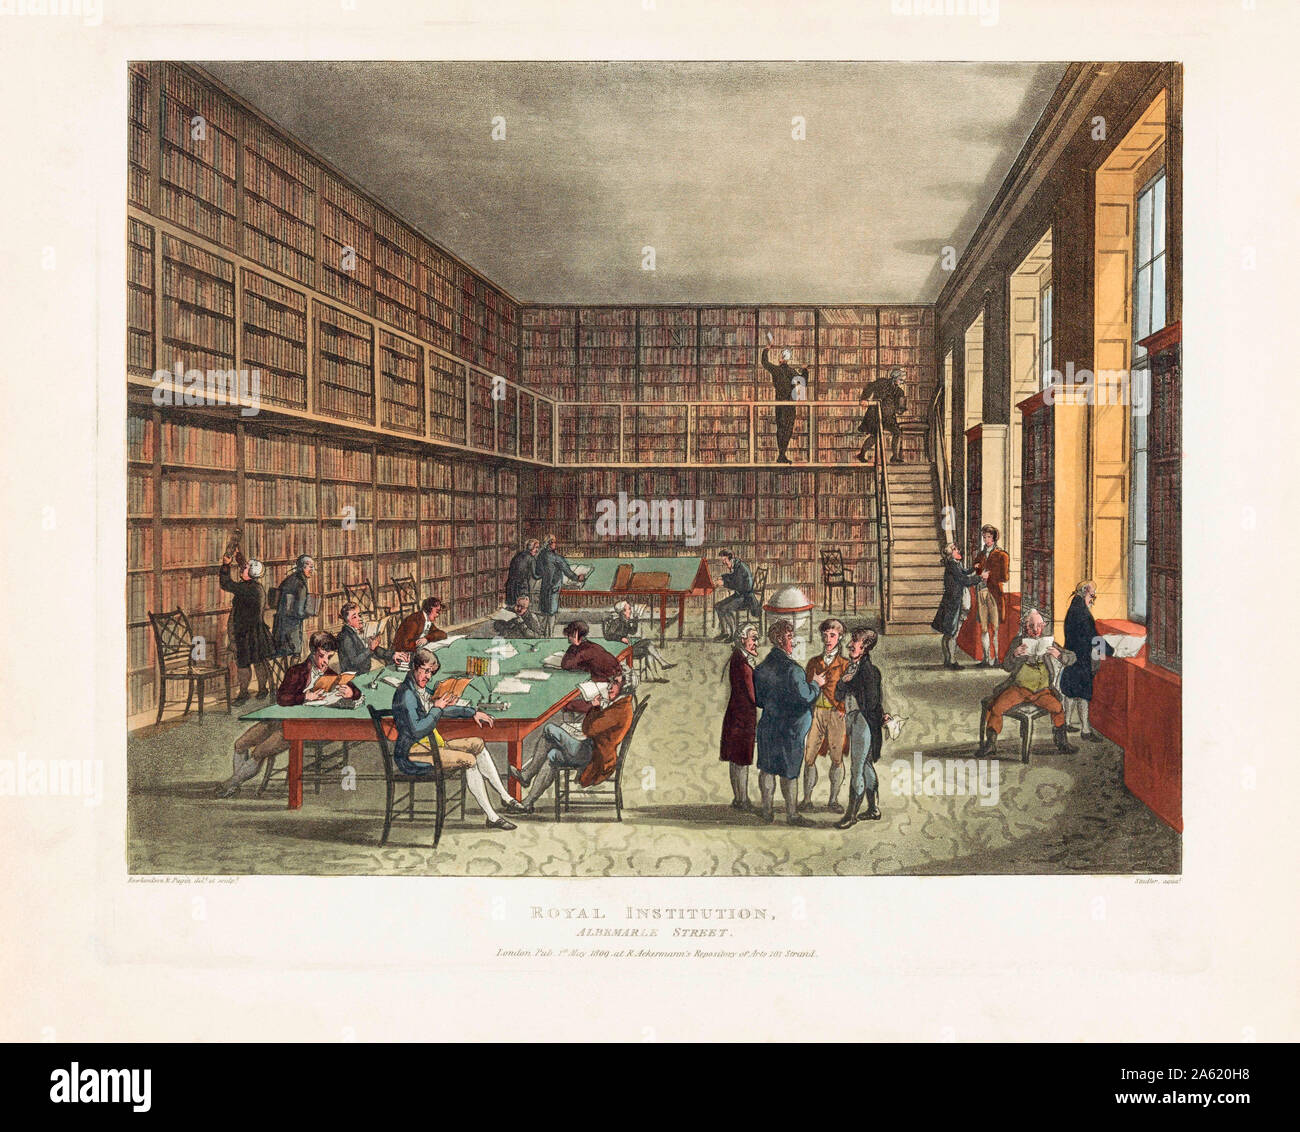 Der Royal Institution Bibliothek, Albemarle Street, London. Nach einem Stich datiert 1809. Später einfärben. Stockfoto